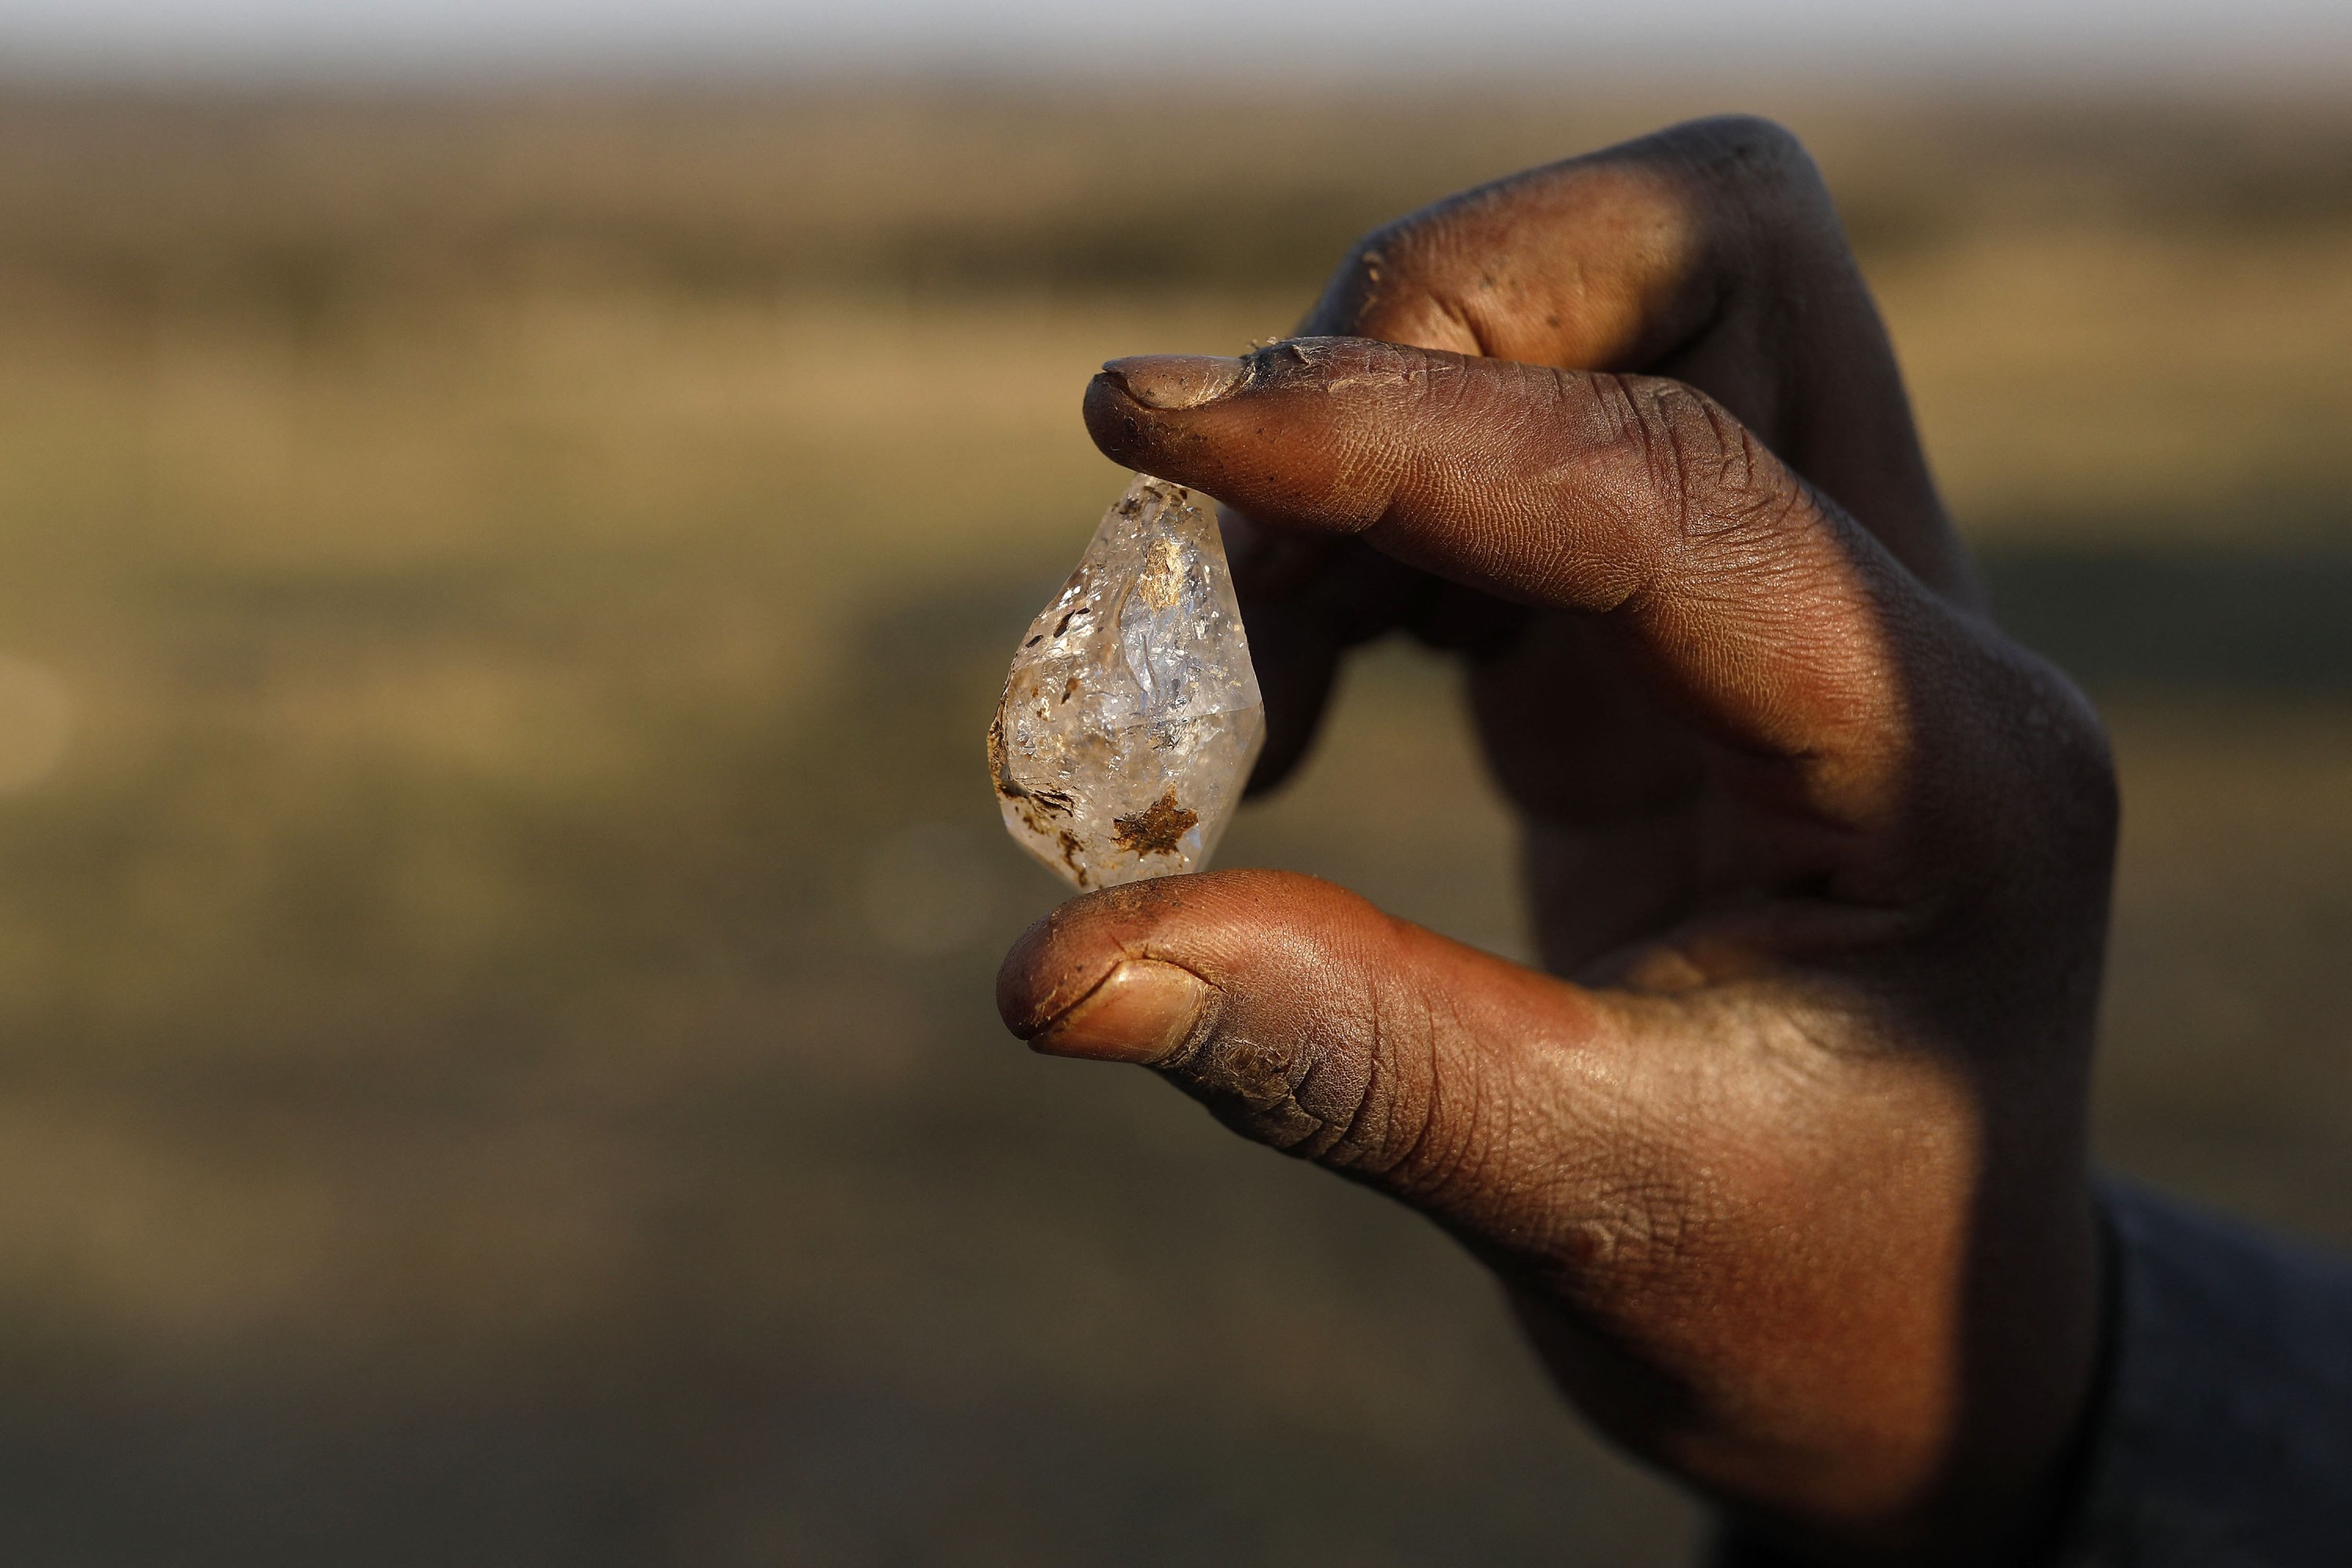 Cơn sốt kim cương bất ngờ ập đến, cả làng rủ nhau đi đào đá quý đổi đời